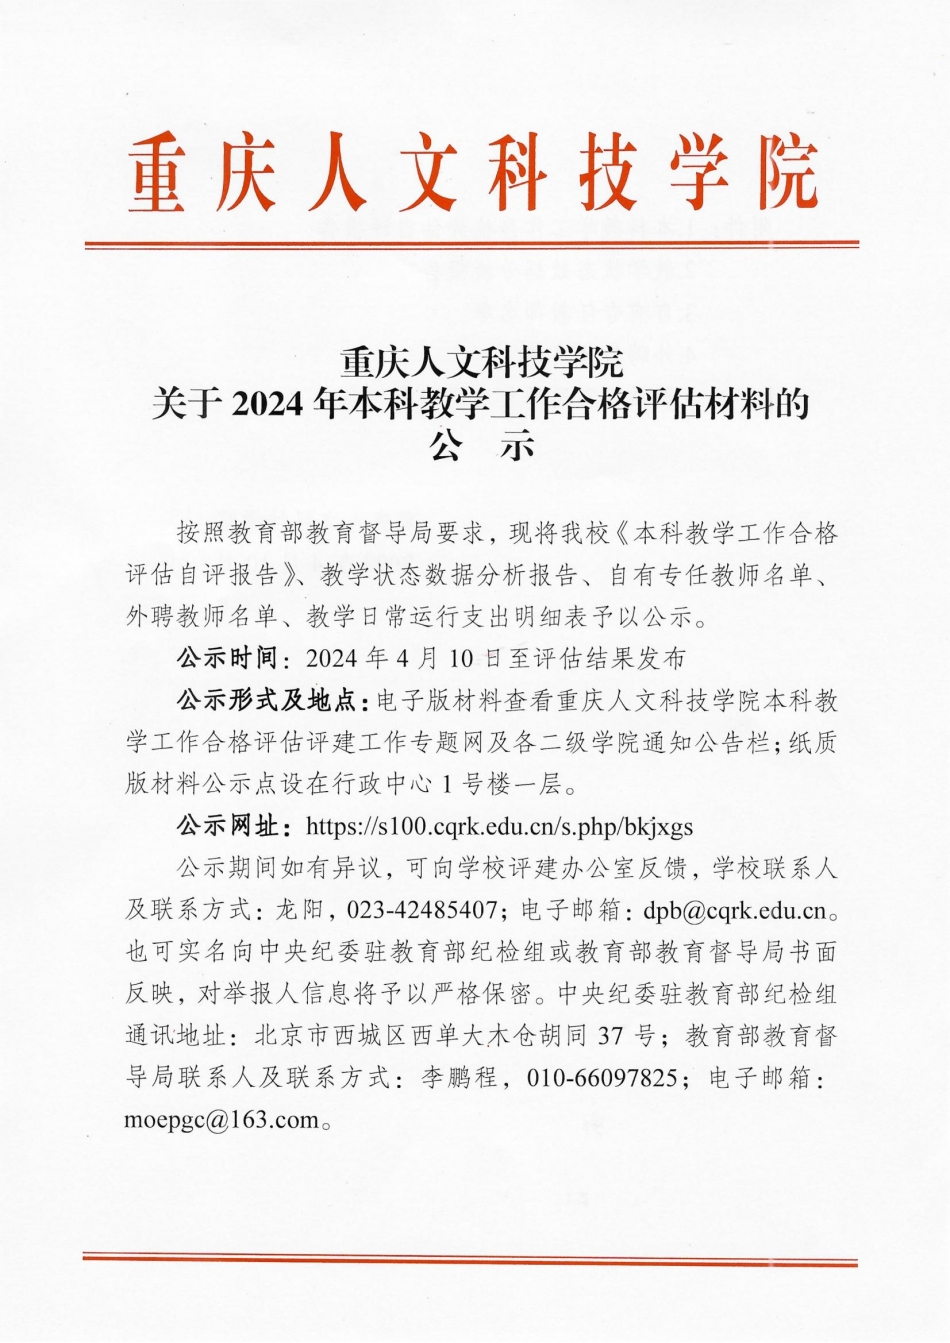 重庆人文科技学院关于2024年本科教学工作合格评估材料的公示 (定稿)_00.jpg